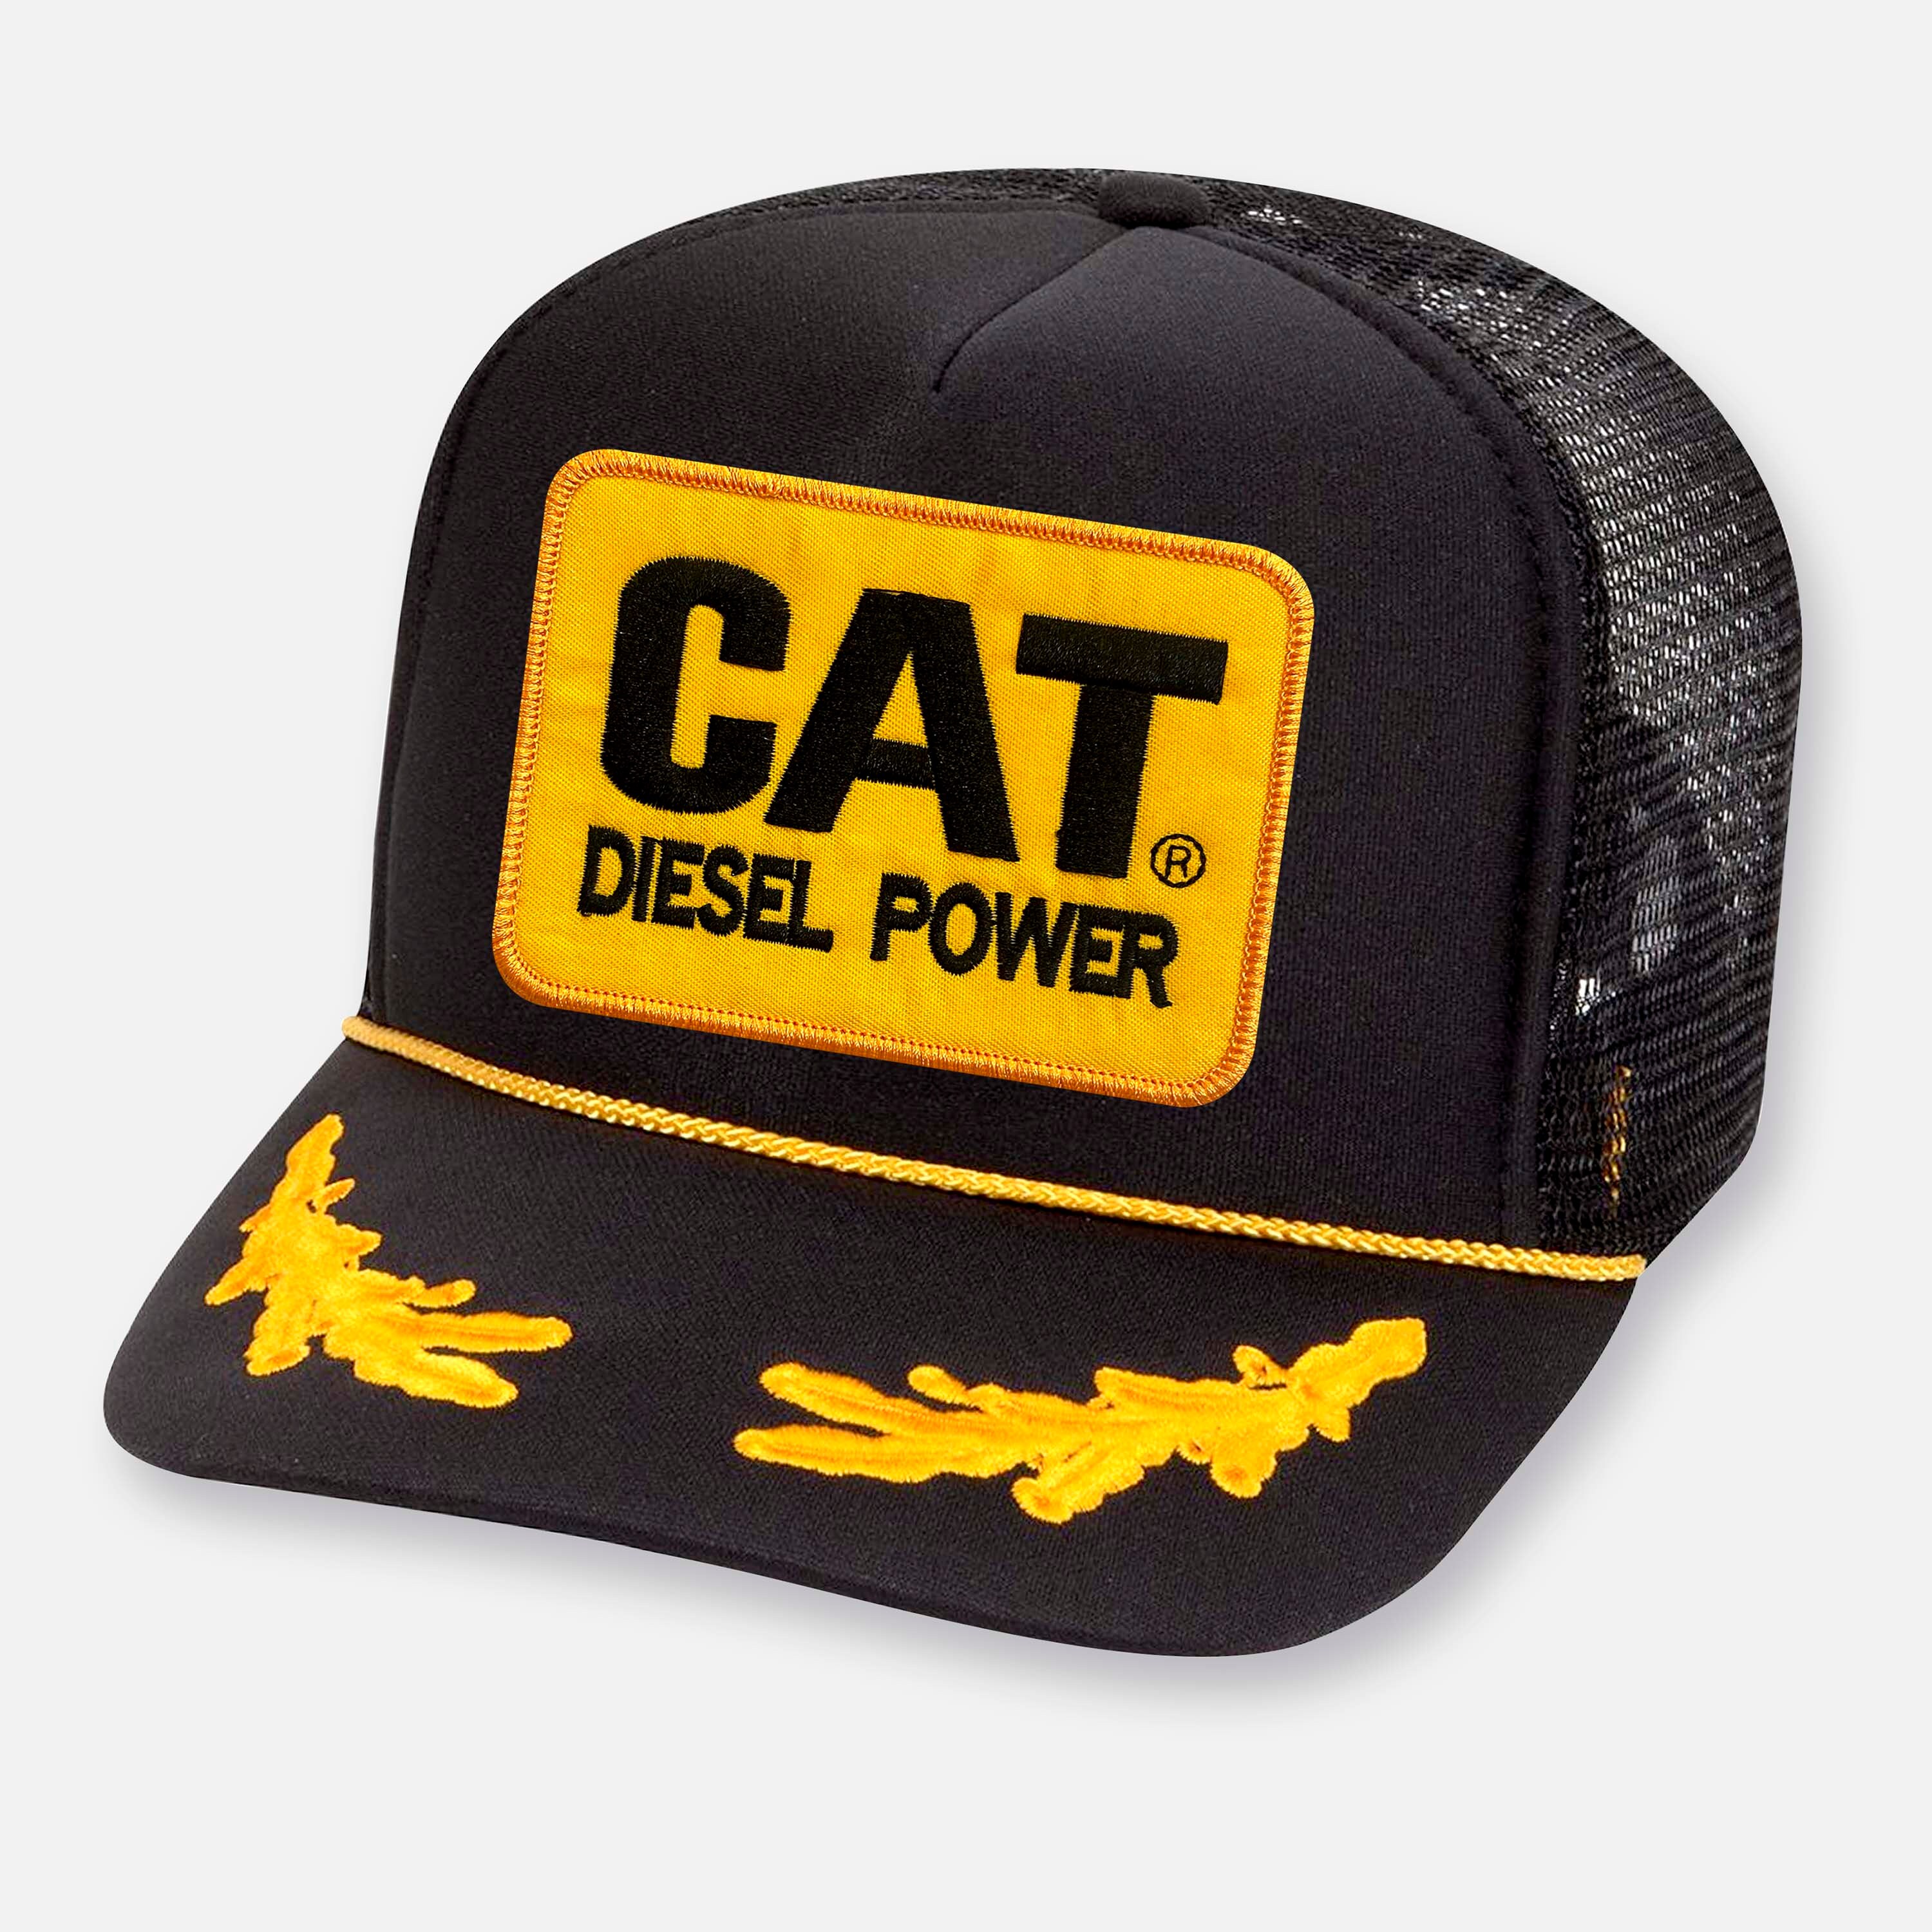 Accessoires Hoeden & petten Honkbal Vintage CAT Diesel Power Denim Truckers Snapback Patch Hat Made in USA Tonkin & truckerspetten 